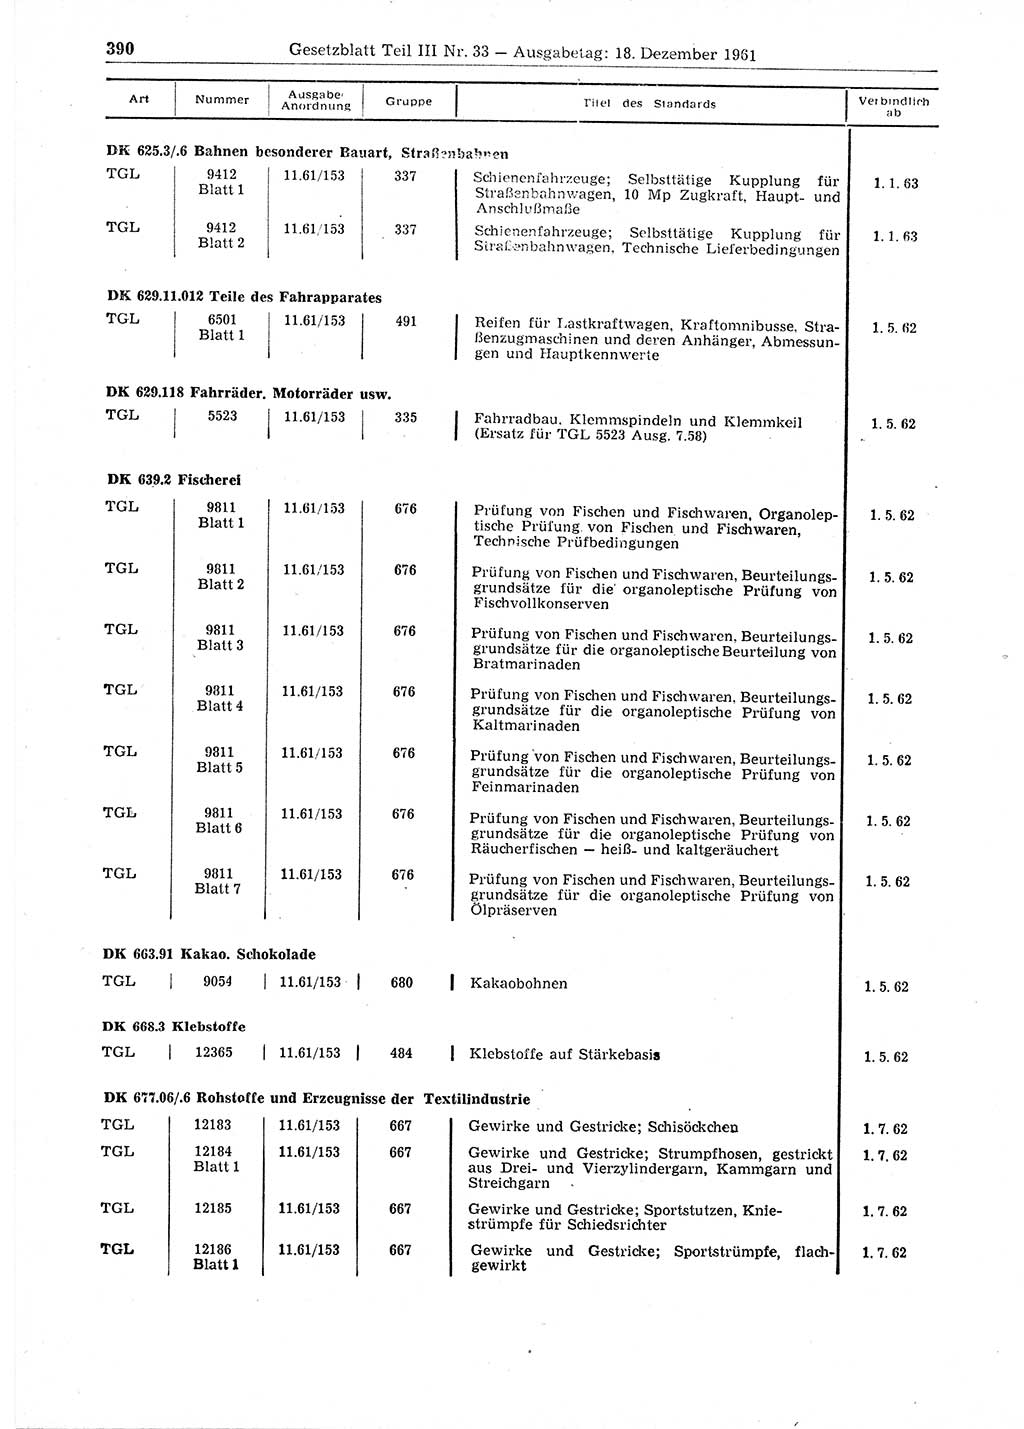 Gesetzblatt (GBl.) der Deutschen Demokratischen Republik (DDR) Teil ⅠⅠⅠ 1961, Seite 390 (GBl. DDR ⅠⅠⅠ 1961, S. 390)